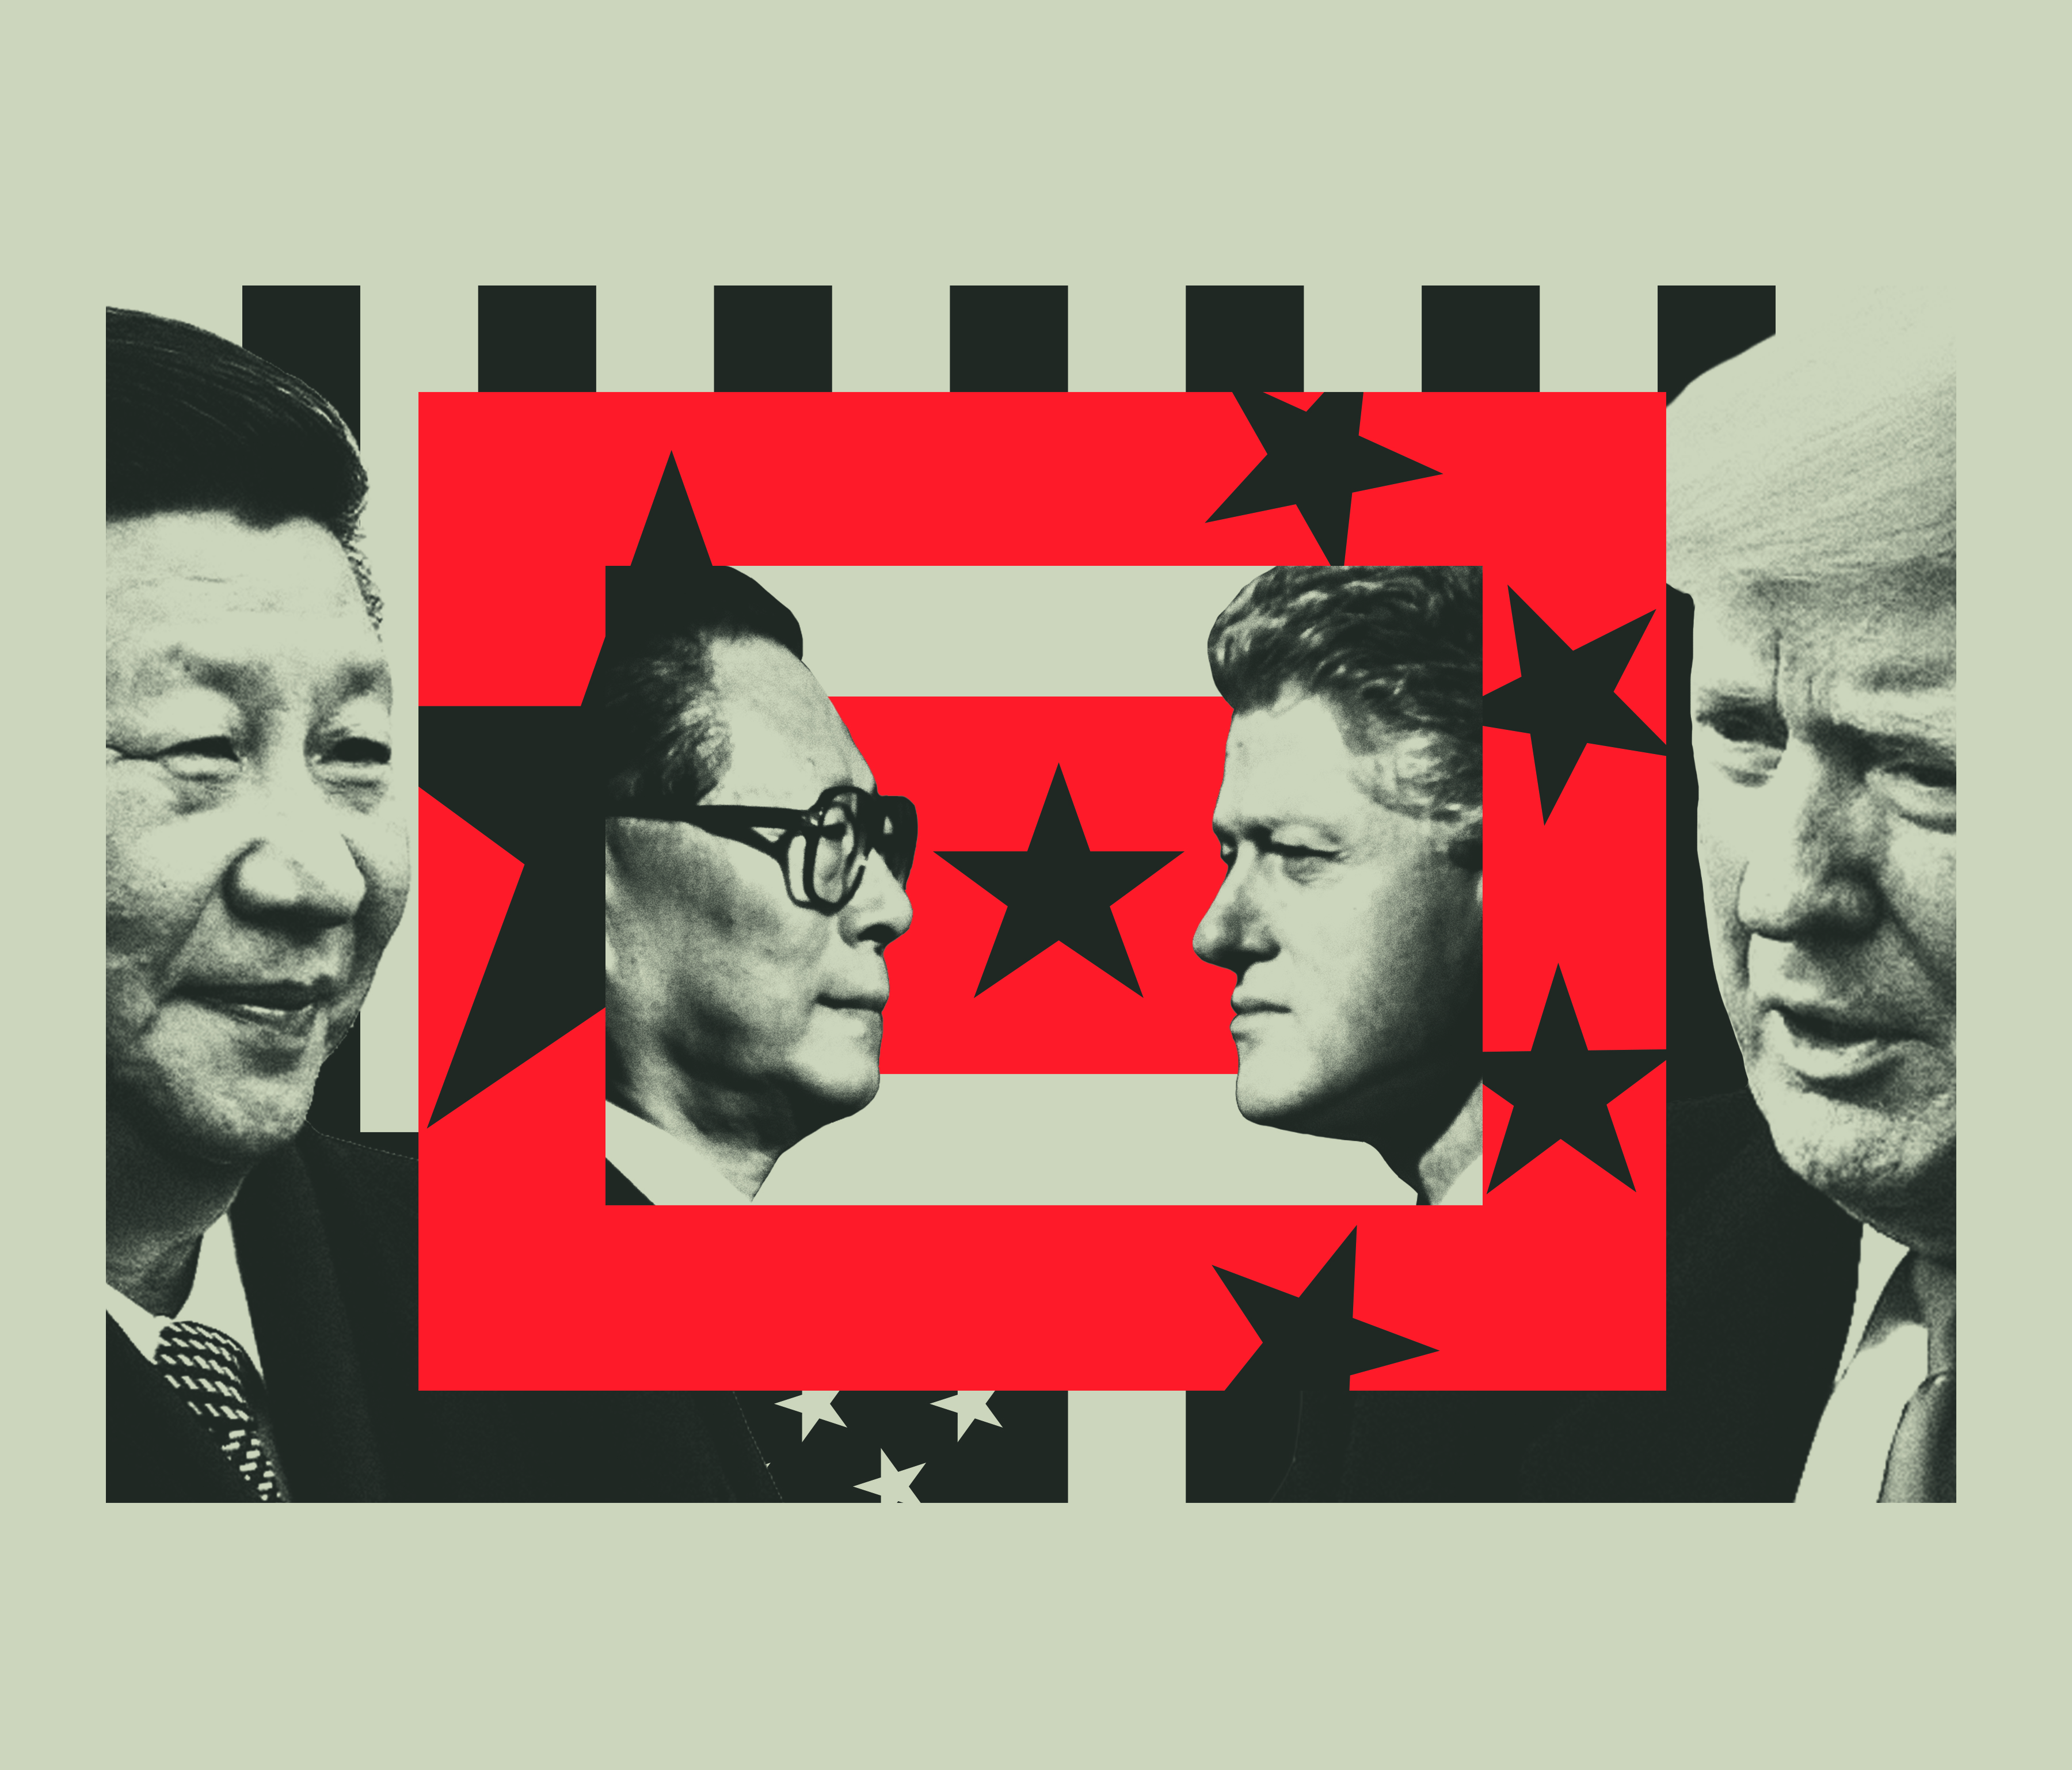 Xi Jinping, Jiang Zemin, Bill Clinton, Donald Trump